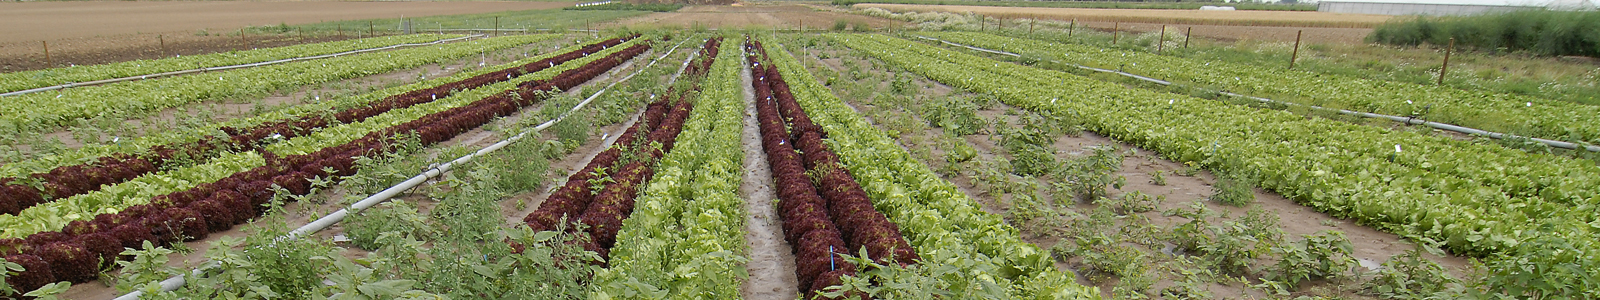 Salatanbau auf Ackerfläche ©DLR